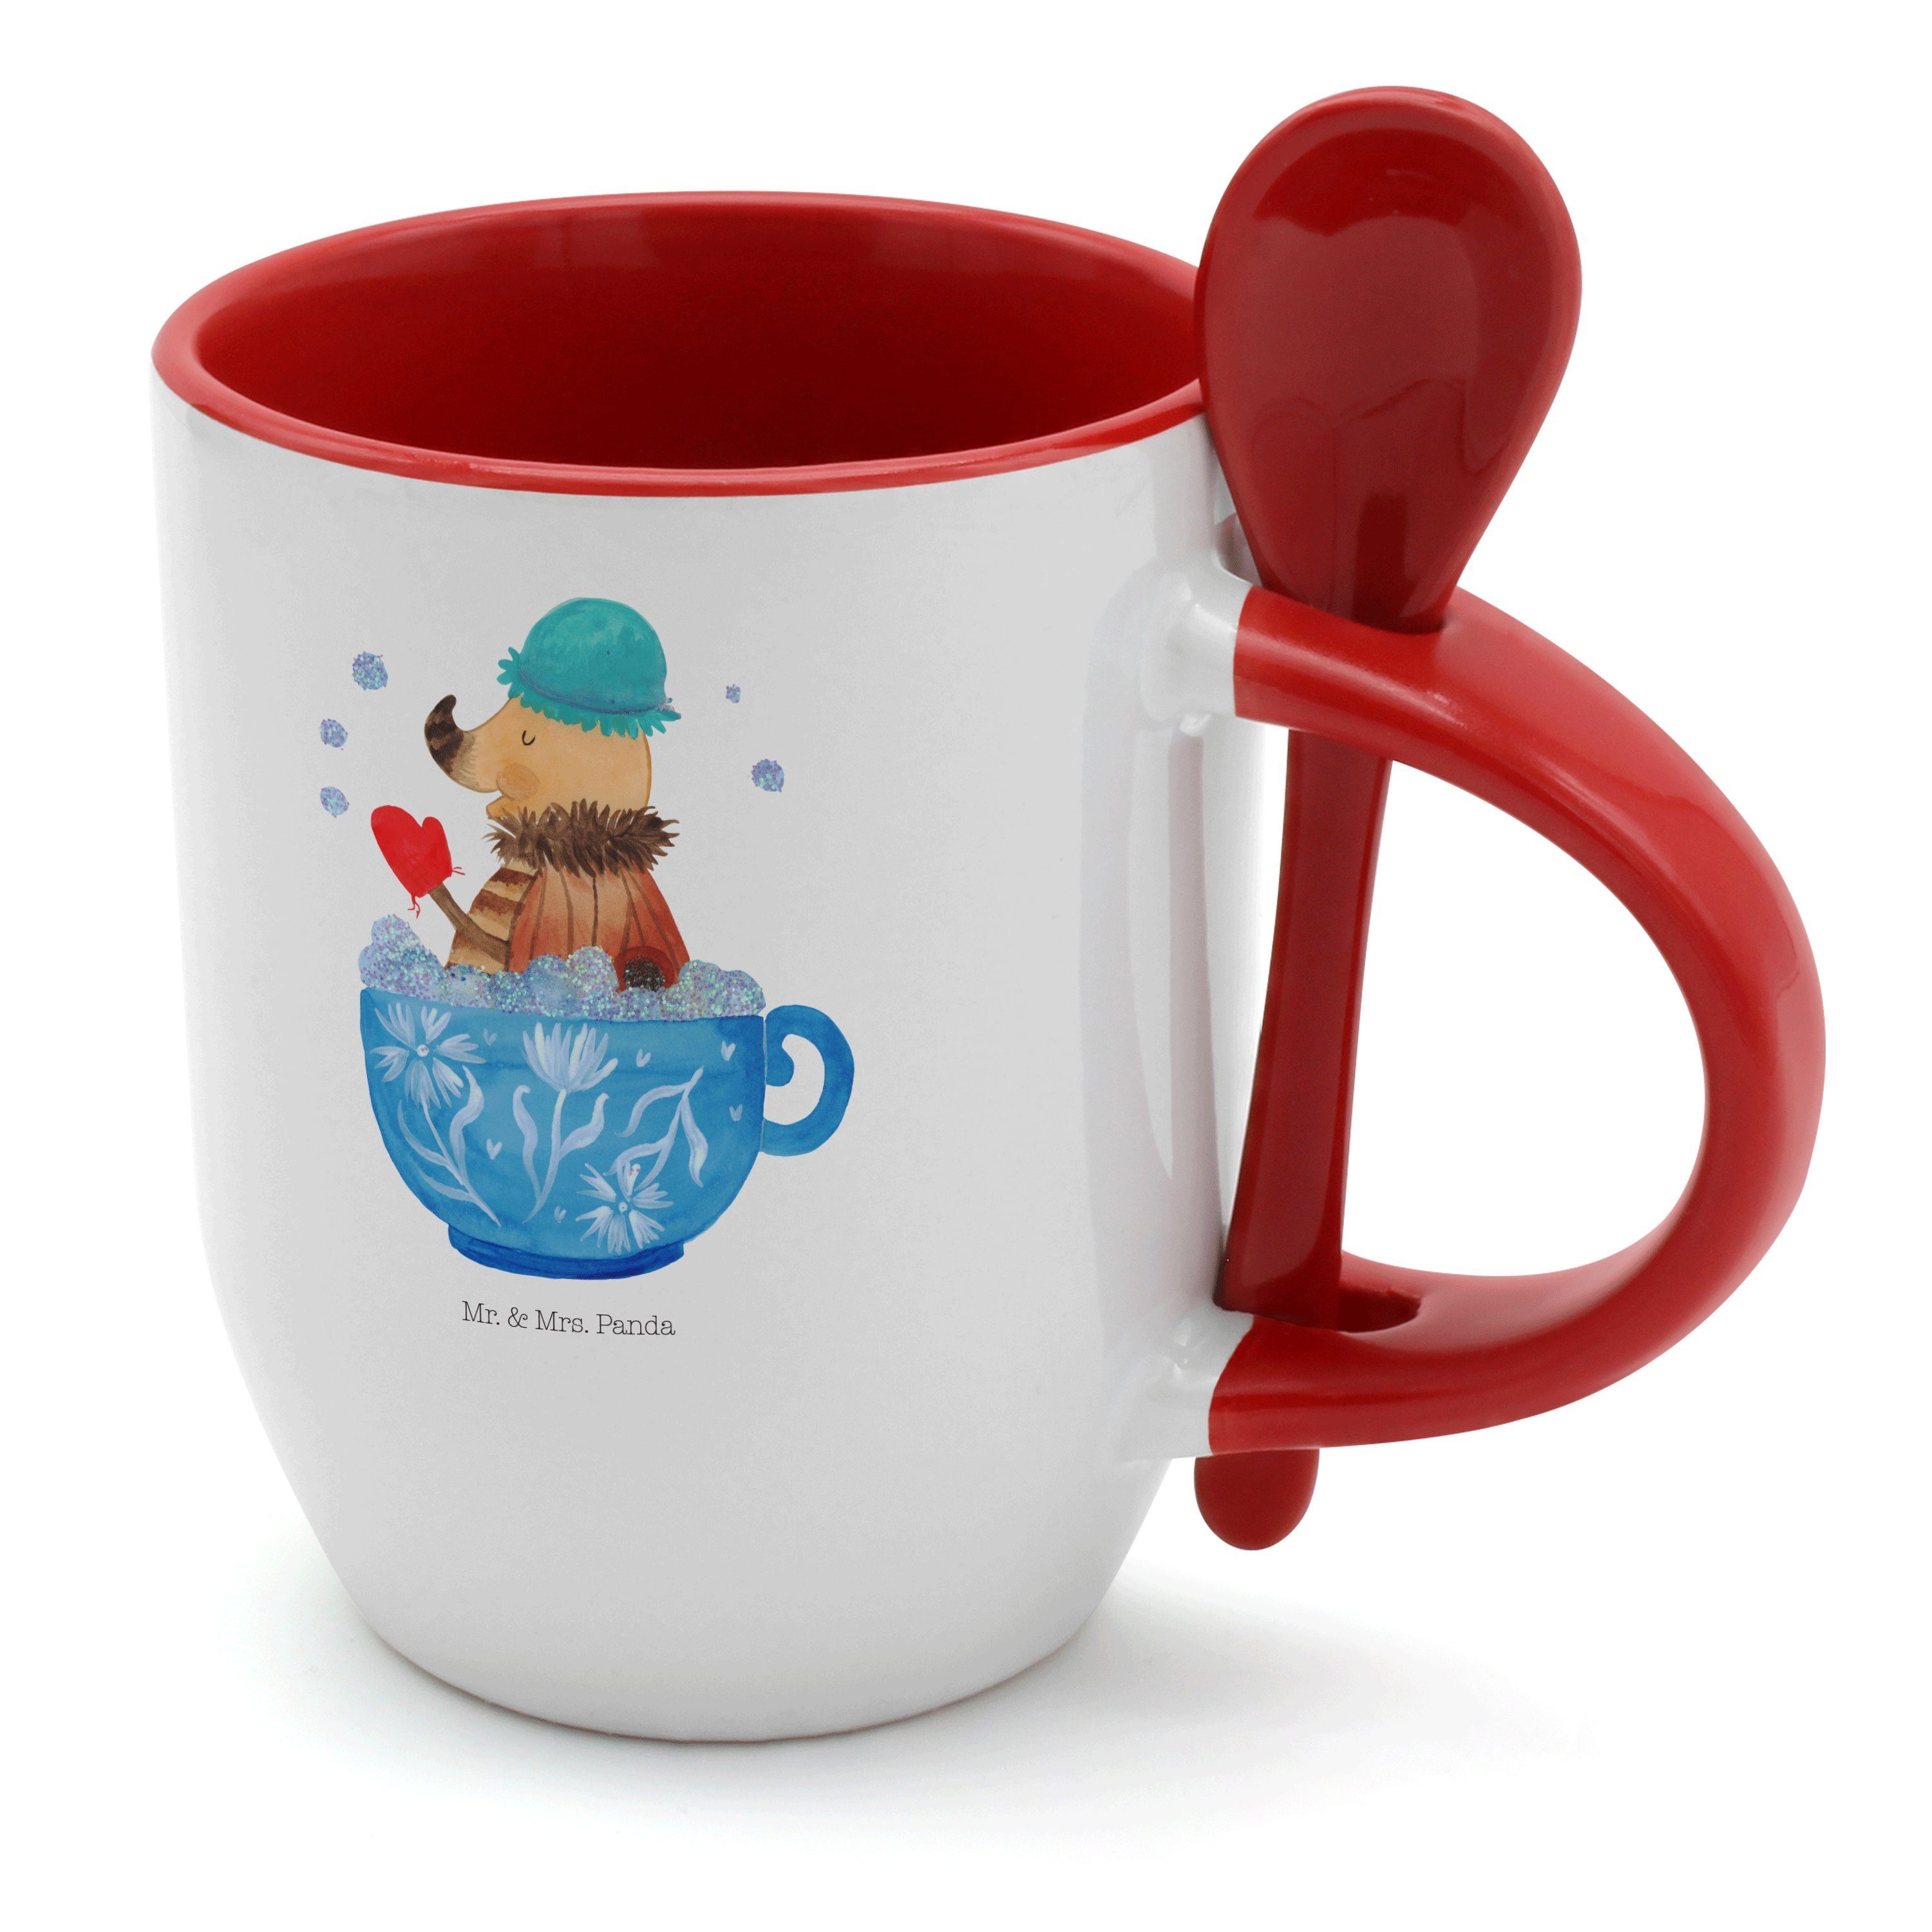 Panda Becher Niedliche Keramik-Kaffeetasse mit 3D Panda Deckel und Löffel Süße Tassen Neuheit Kaffee Tee Milch Weihnachtsbecher für Frauen Mädchen Jungen